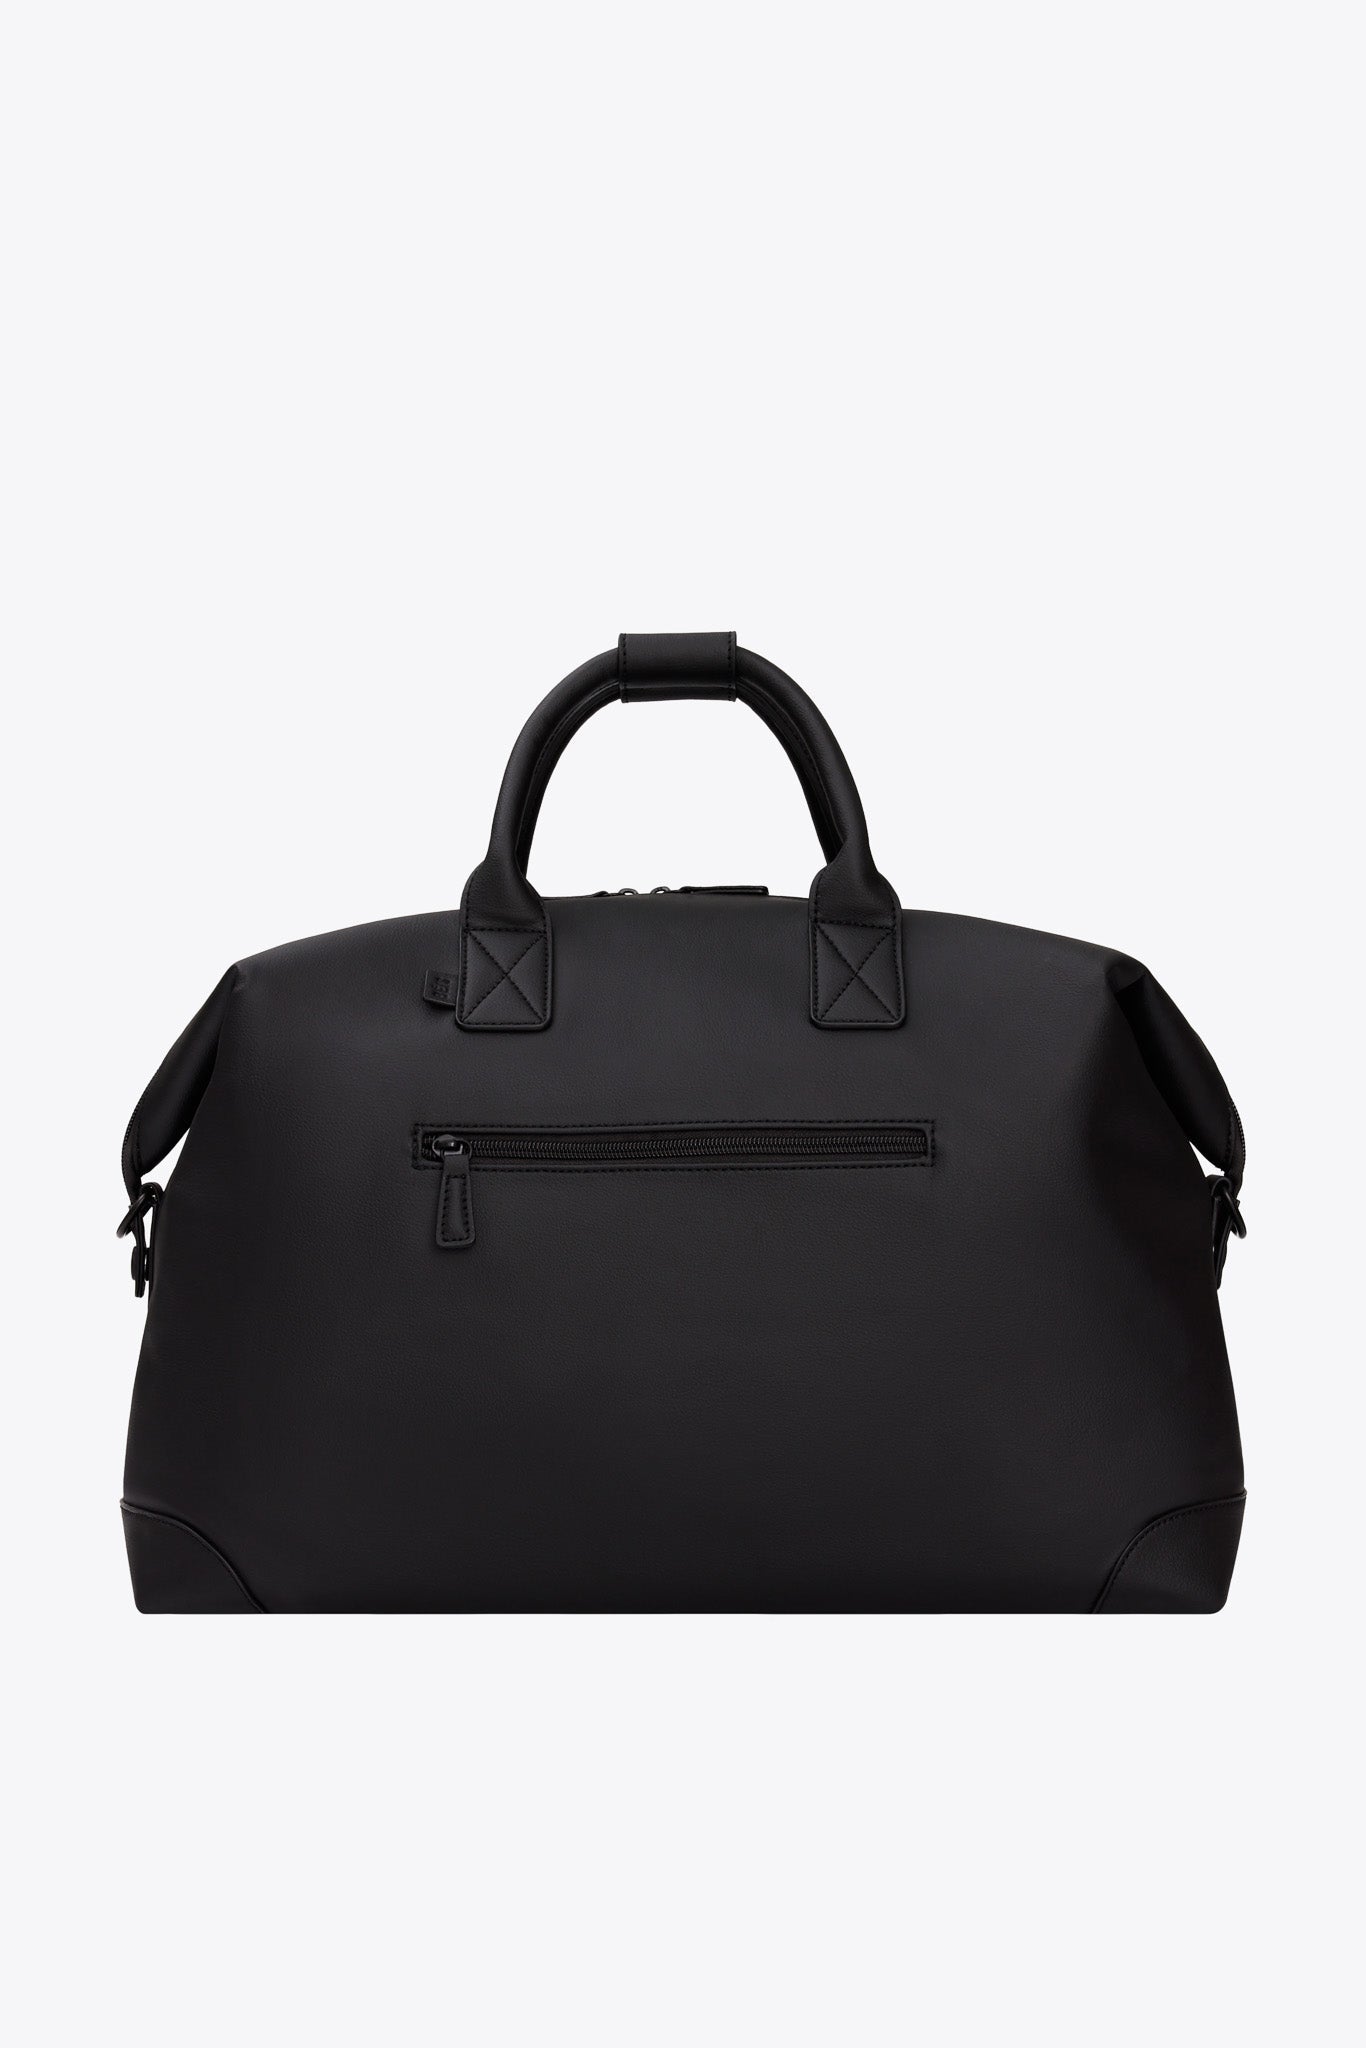 BÉIS 'The Premium Duffle' in Black - Black Vegan Leather Duffle Bag ...